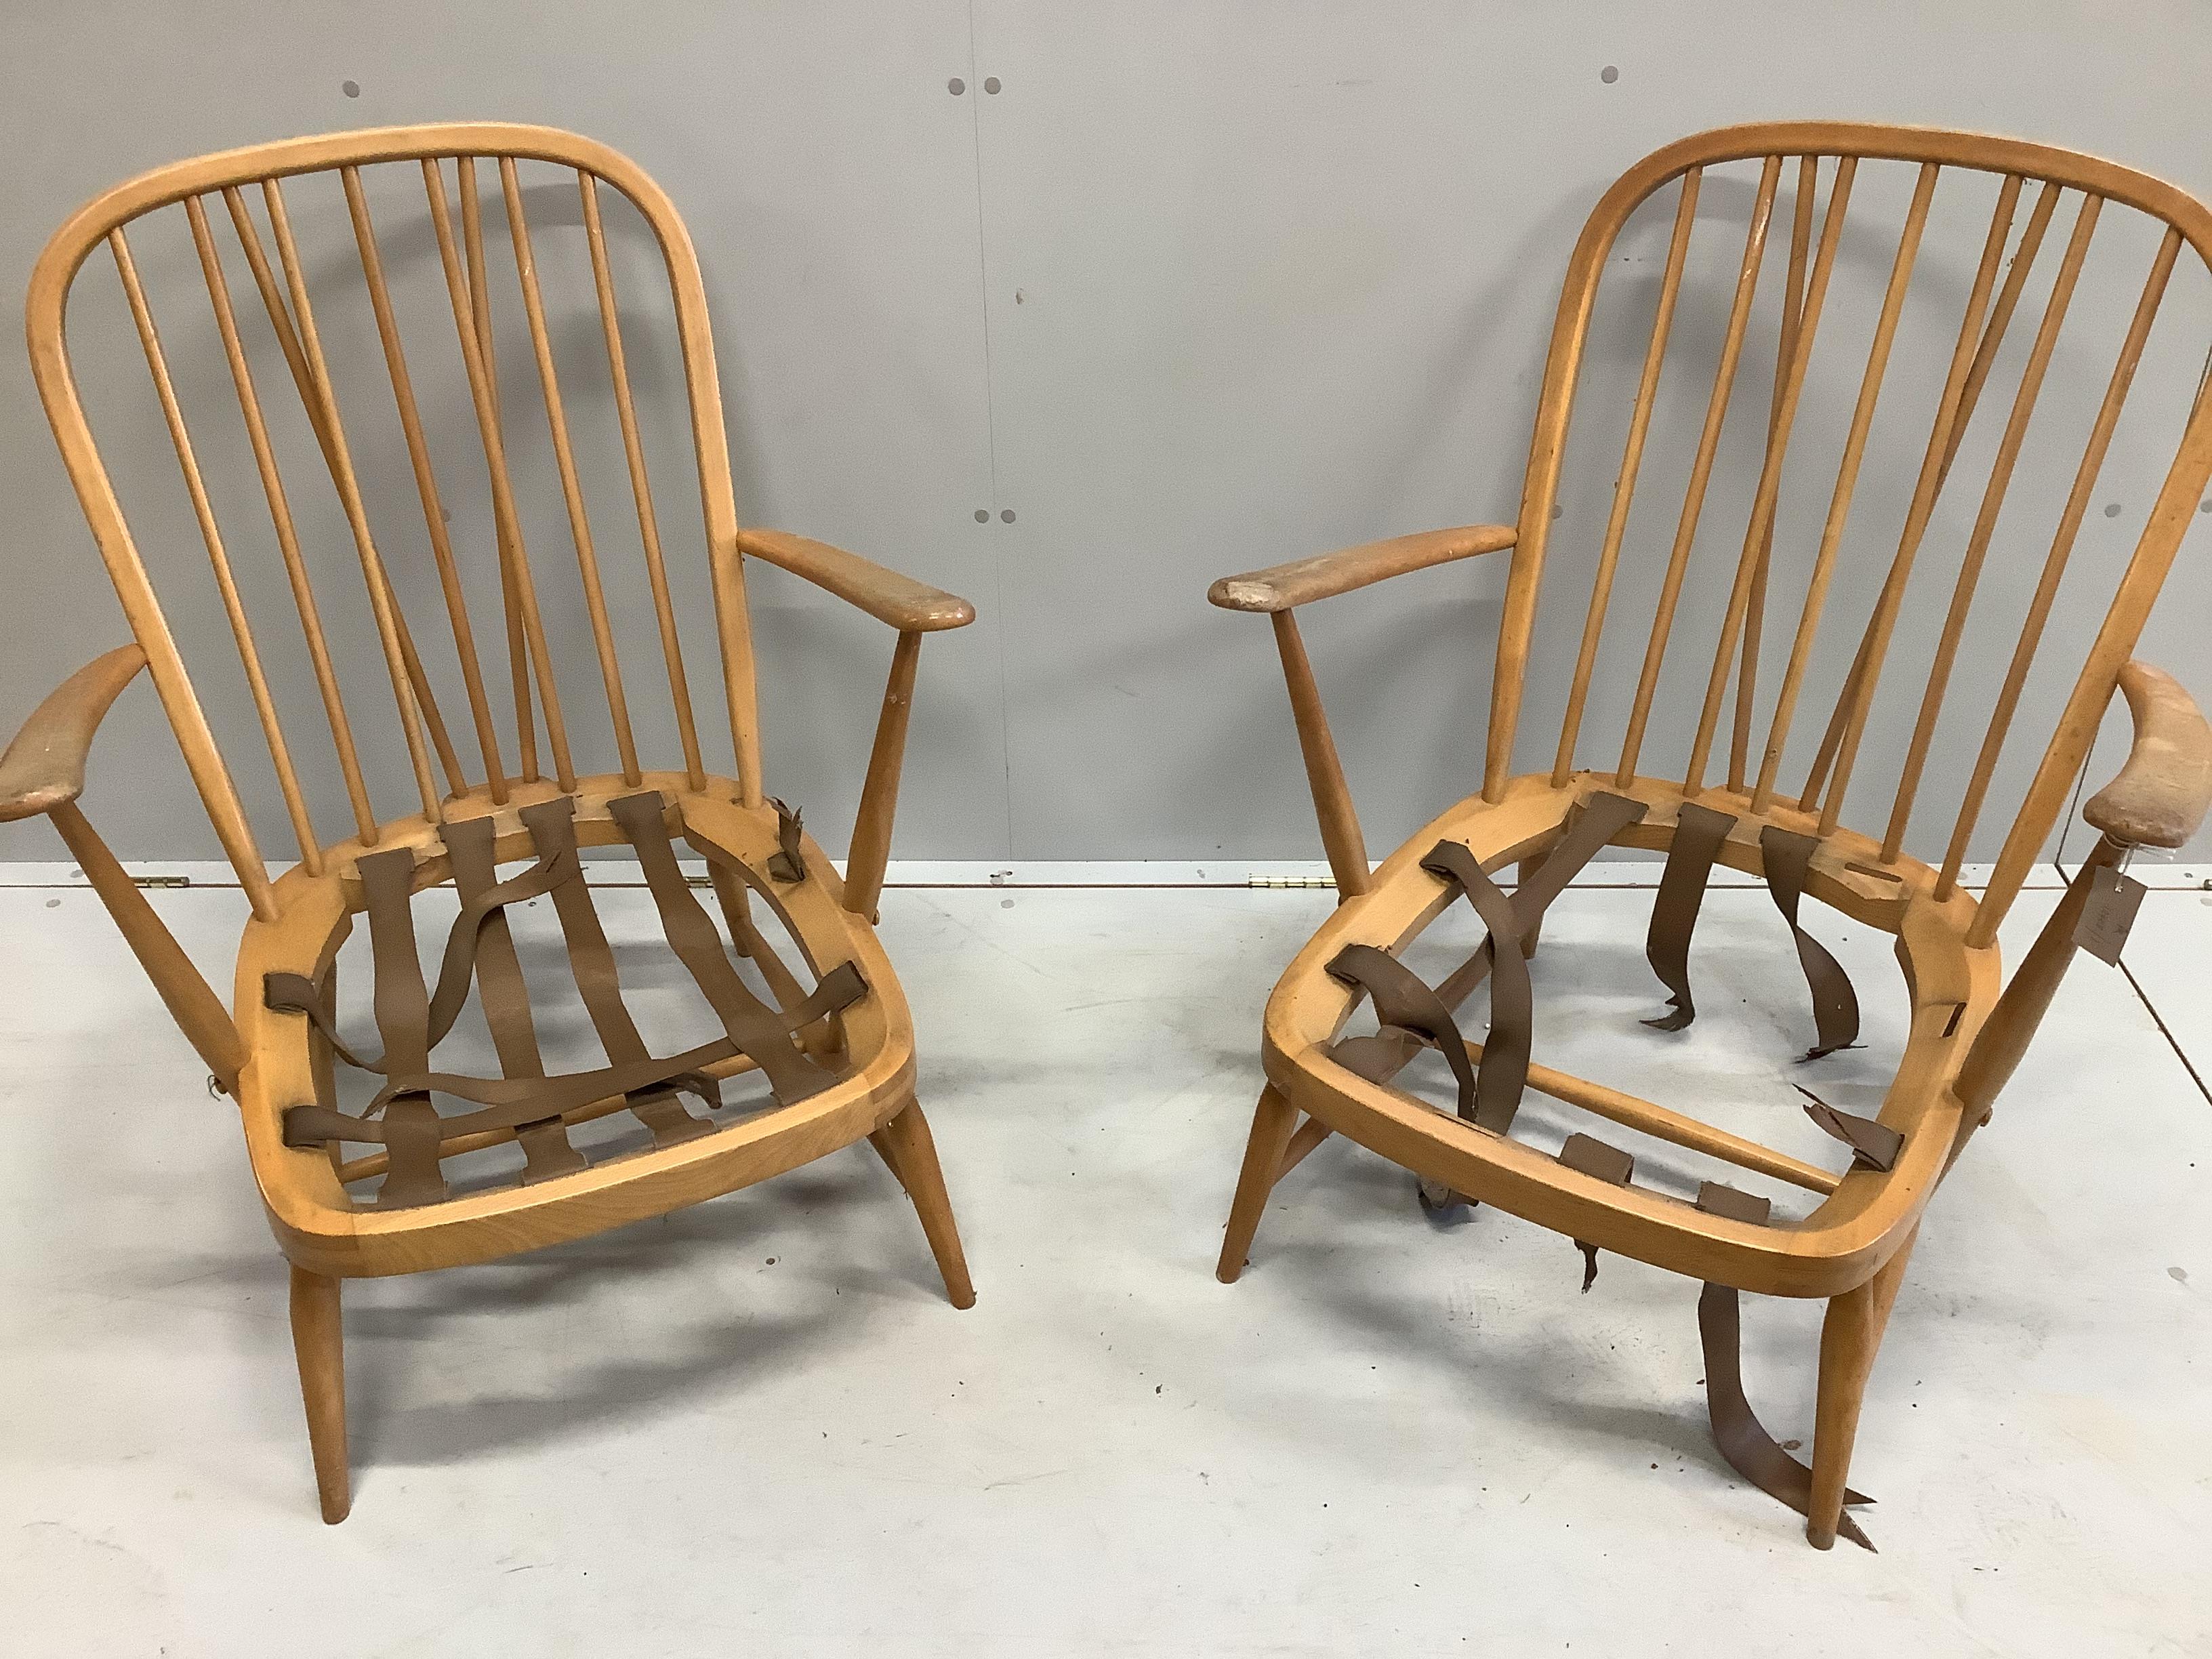 A pair of Ercol beech armchairs, width 70cm, depth 78cm, height 86cm